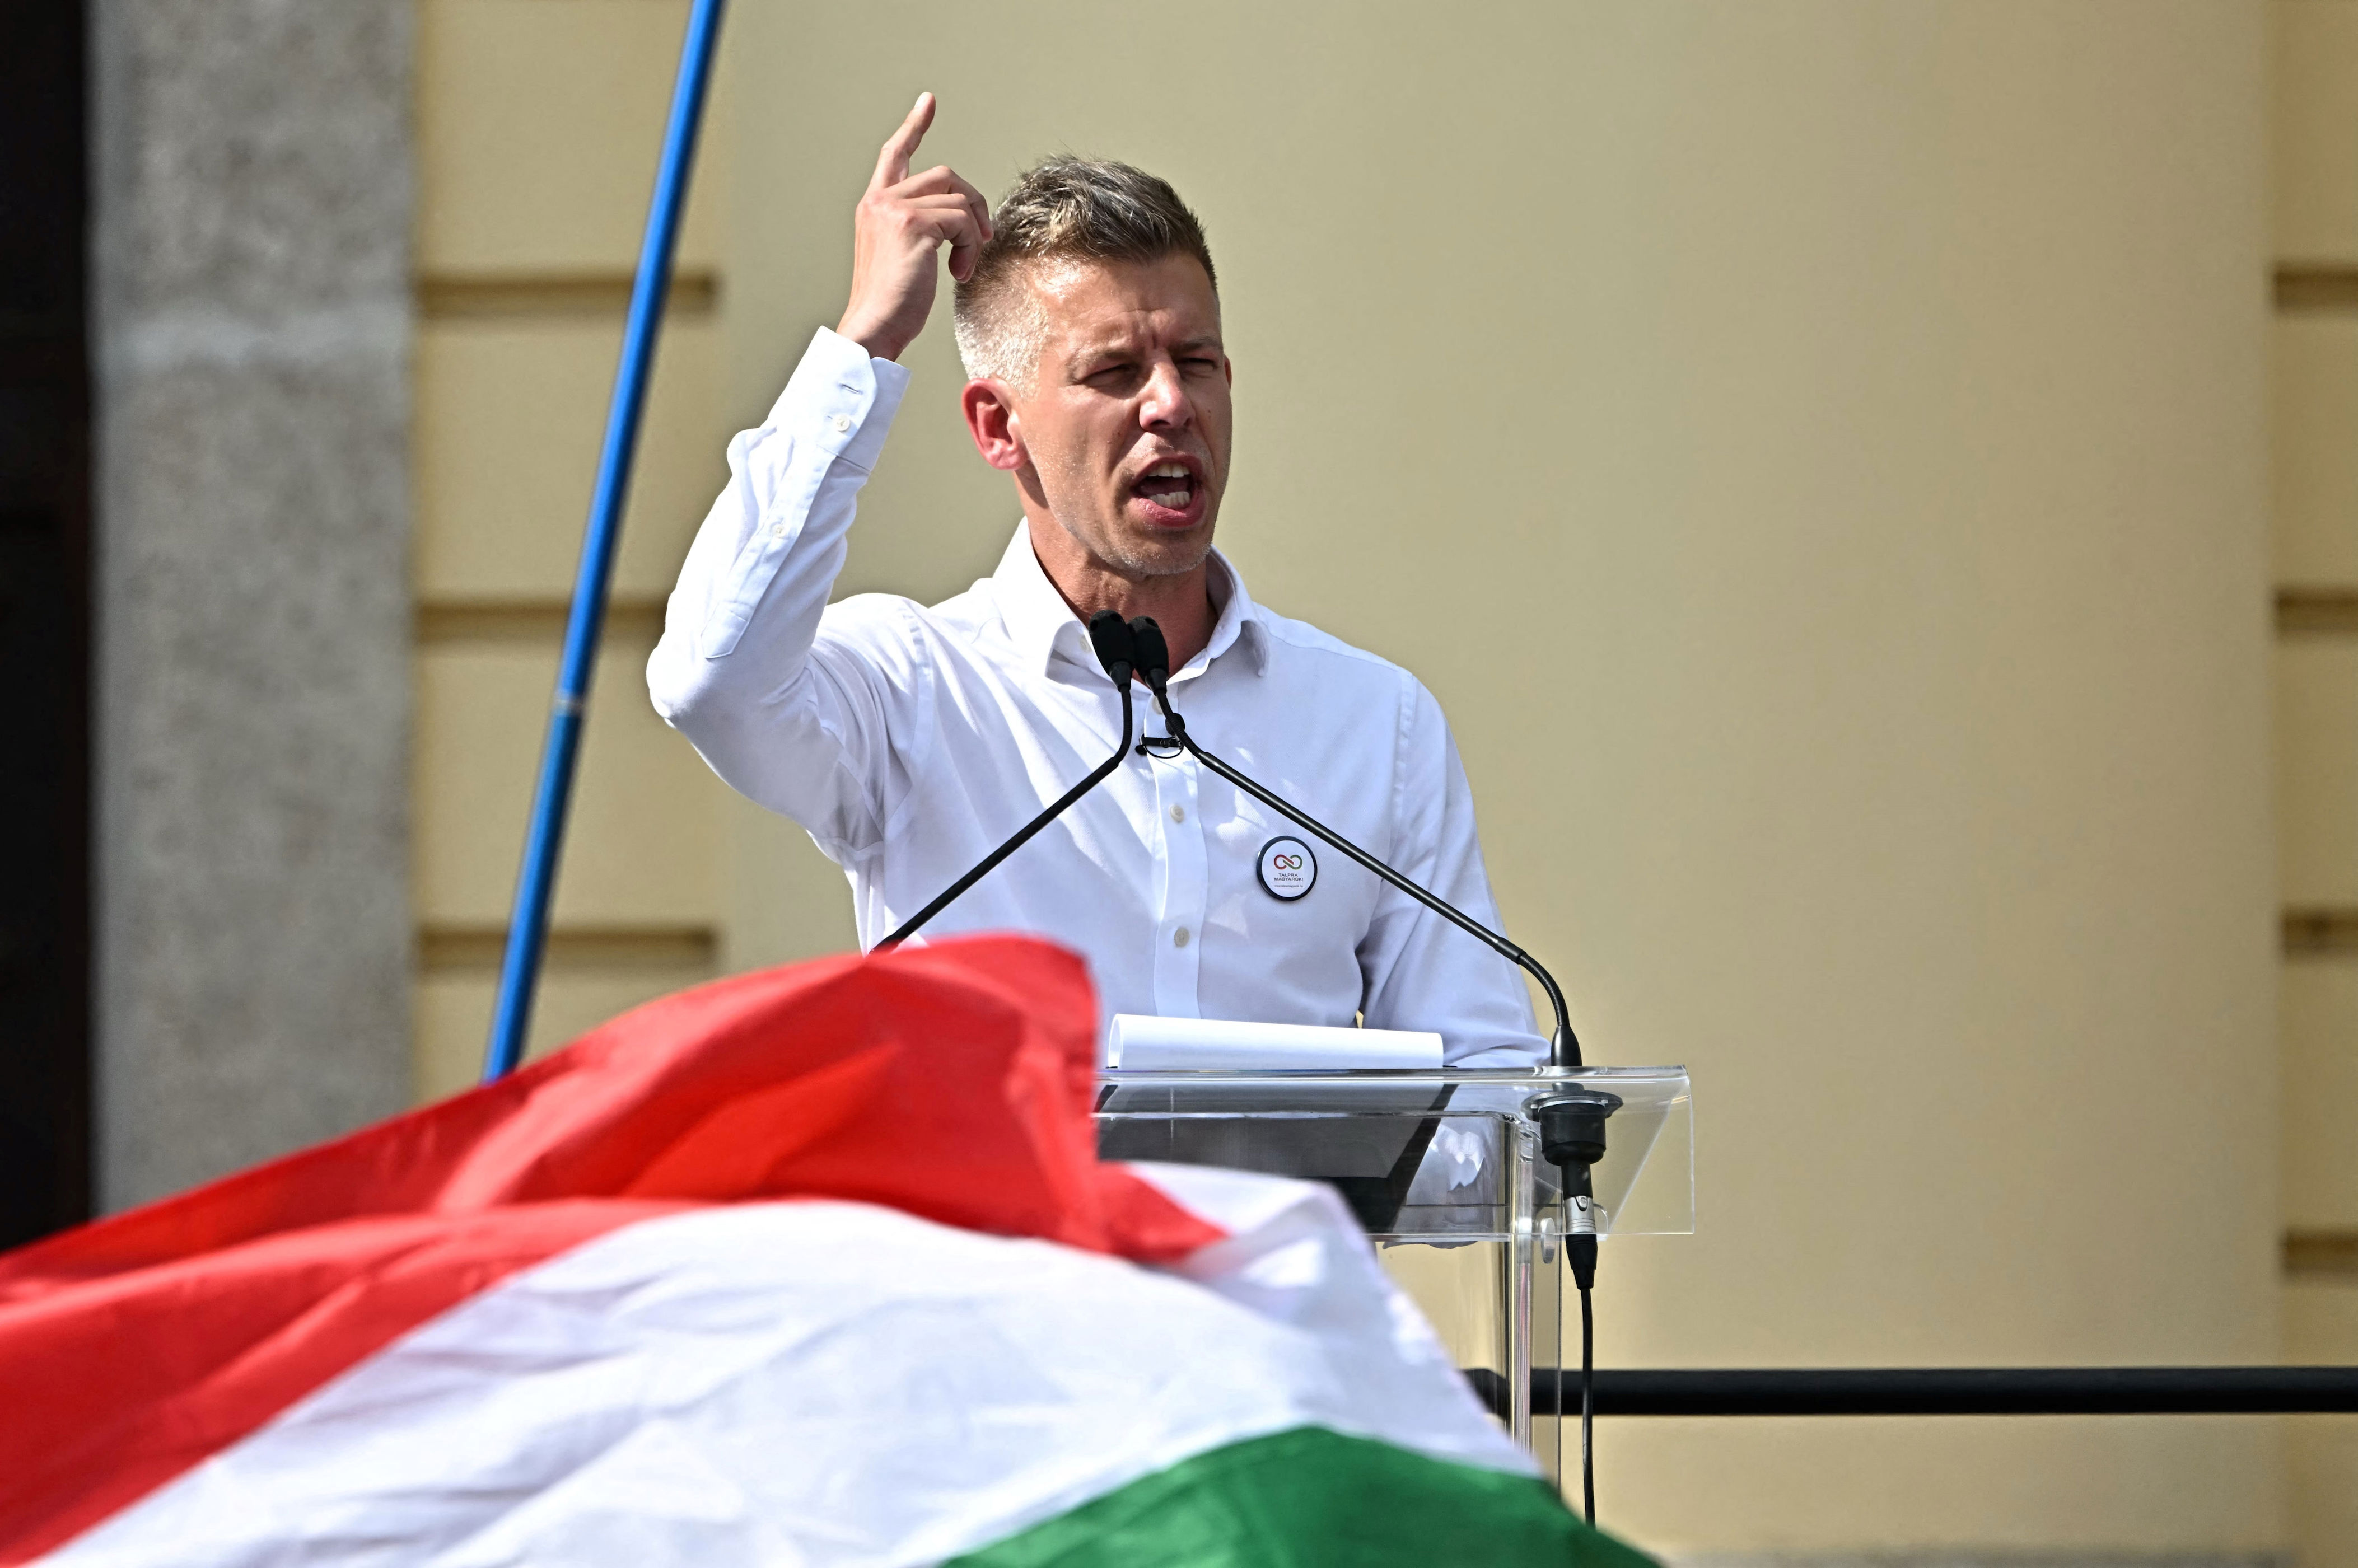 péter magyar: węgrom nikt nie pomagał. dlaczego teraz my mamy pomagać ukrainie?